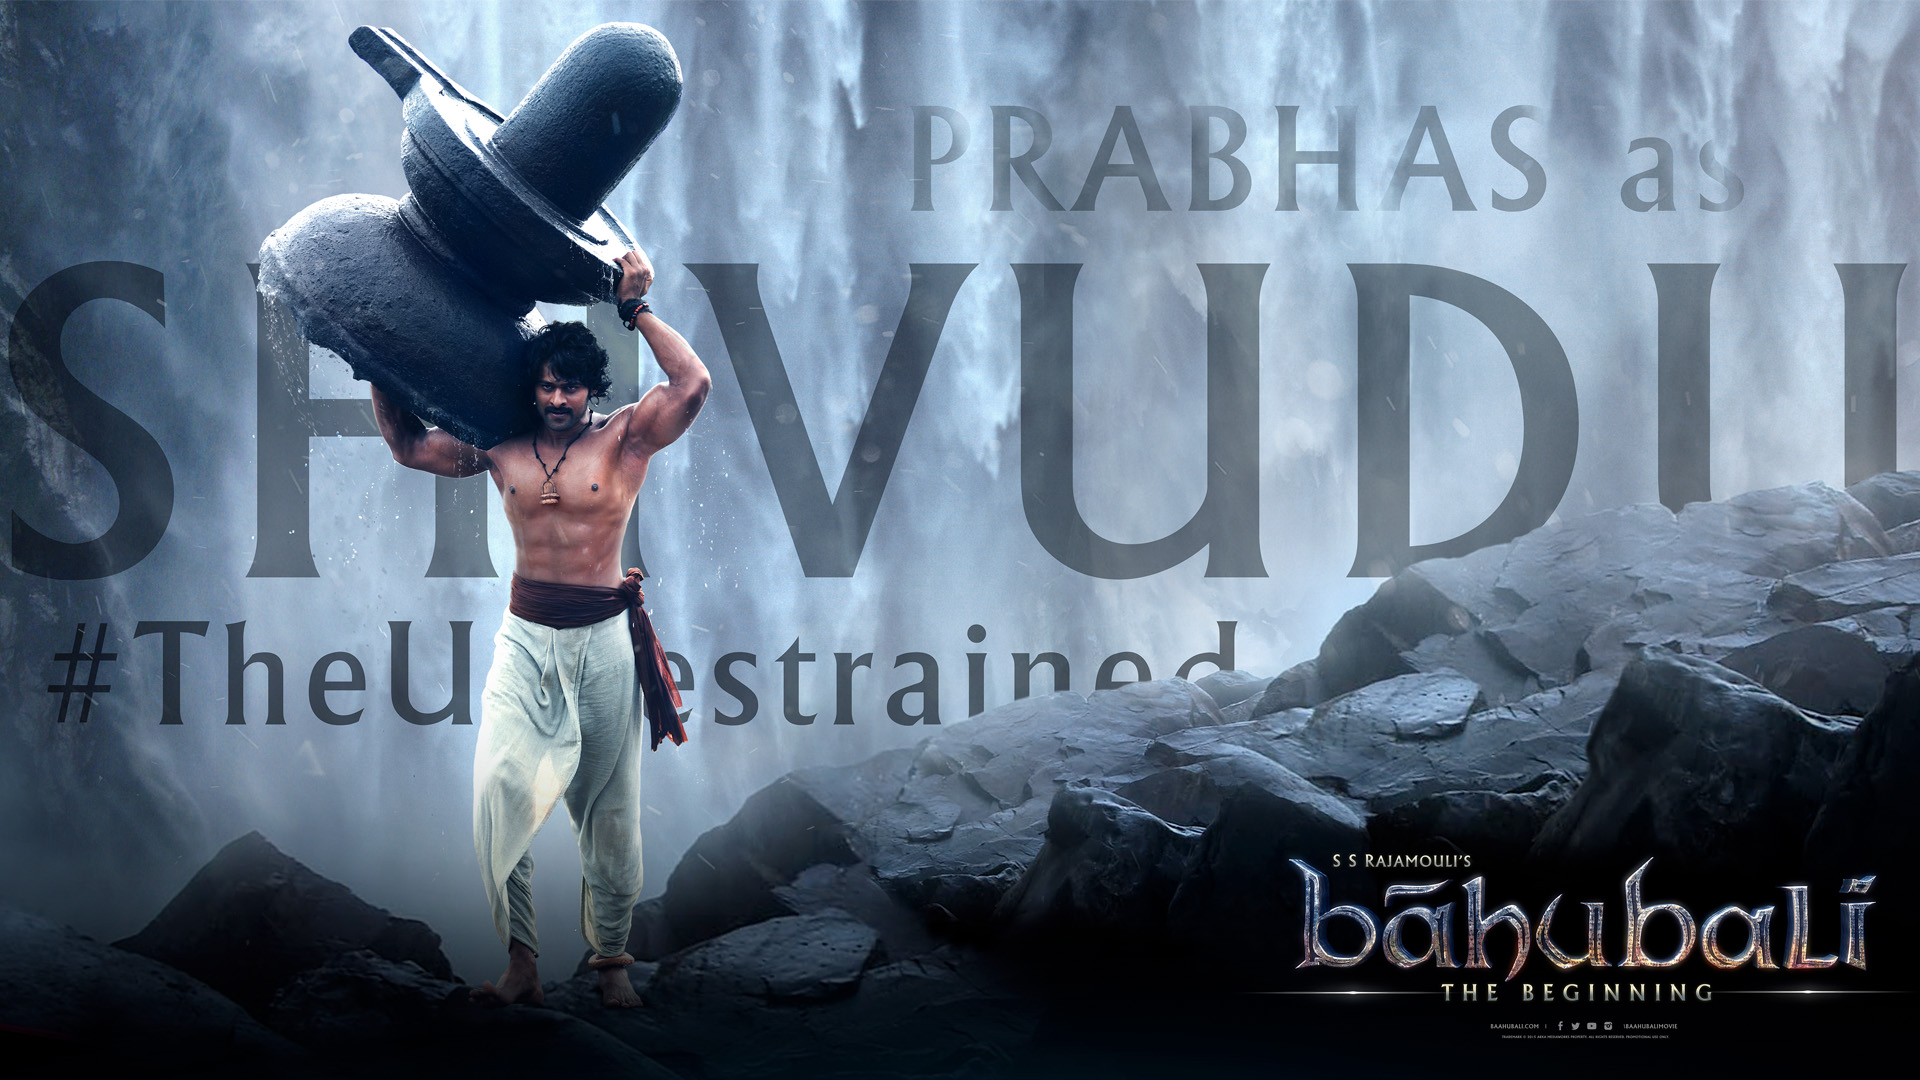 Prabhas in Bahubali